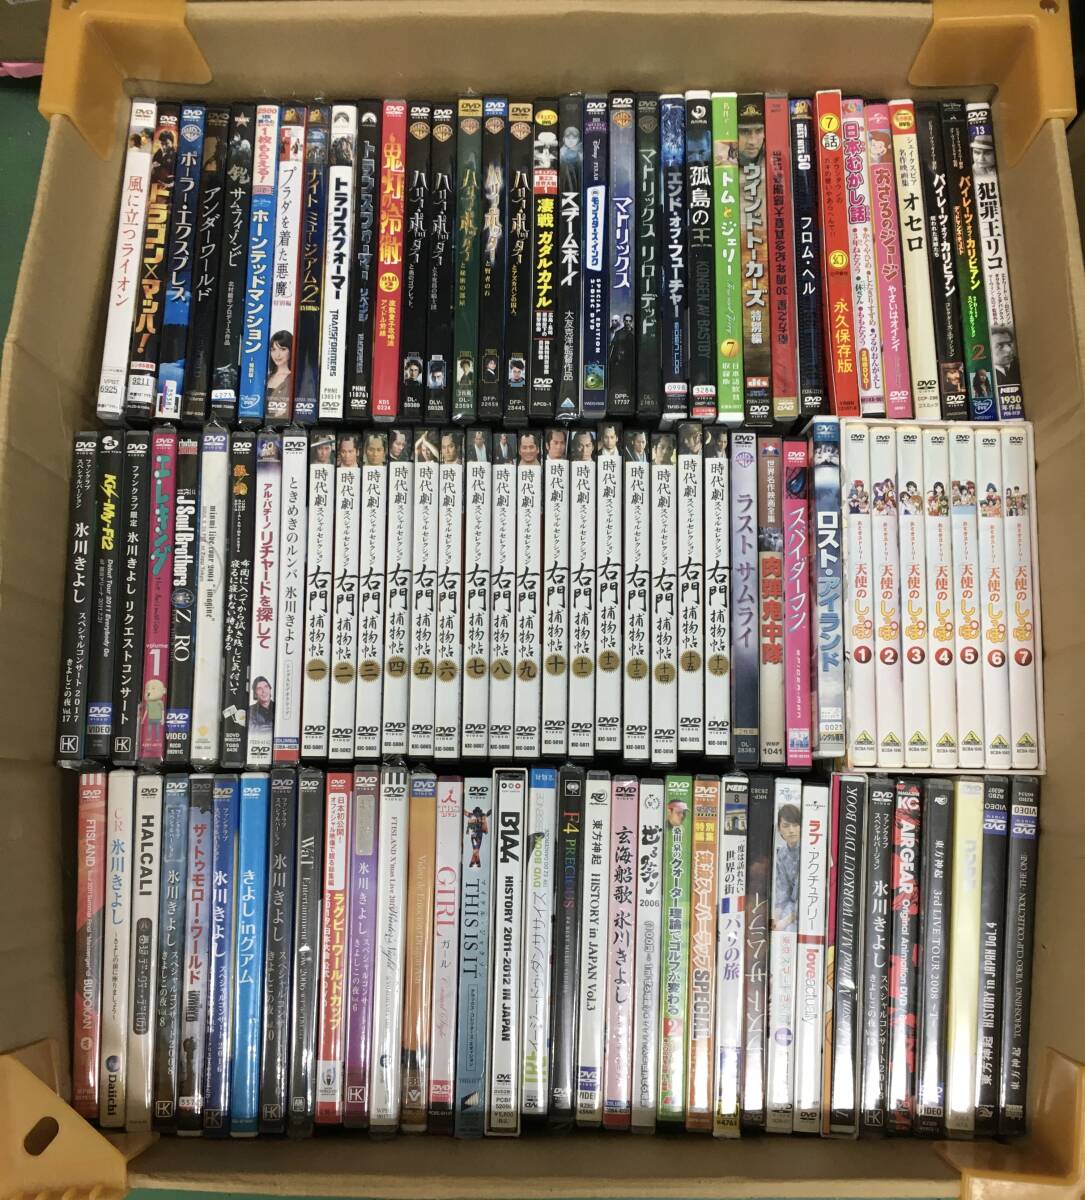 DVD 160 размер продажа комплектом комплект западное кино / японское кино / драма / аниме / Kids / музыка и т.п. много [No.11-44/0/0]